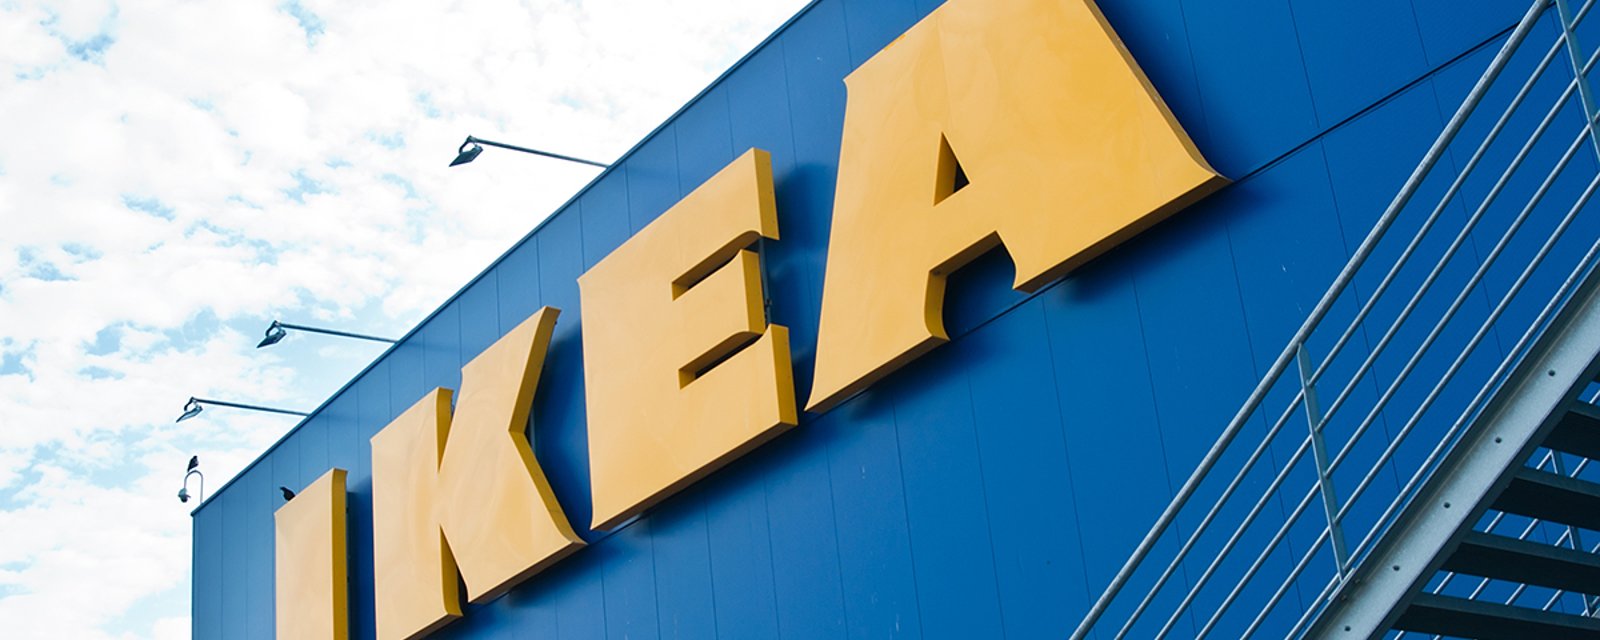 IKEA propose de nombreux articles à 50% de rabais pour à temps pour les déménagements